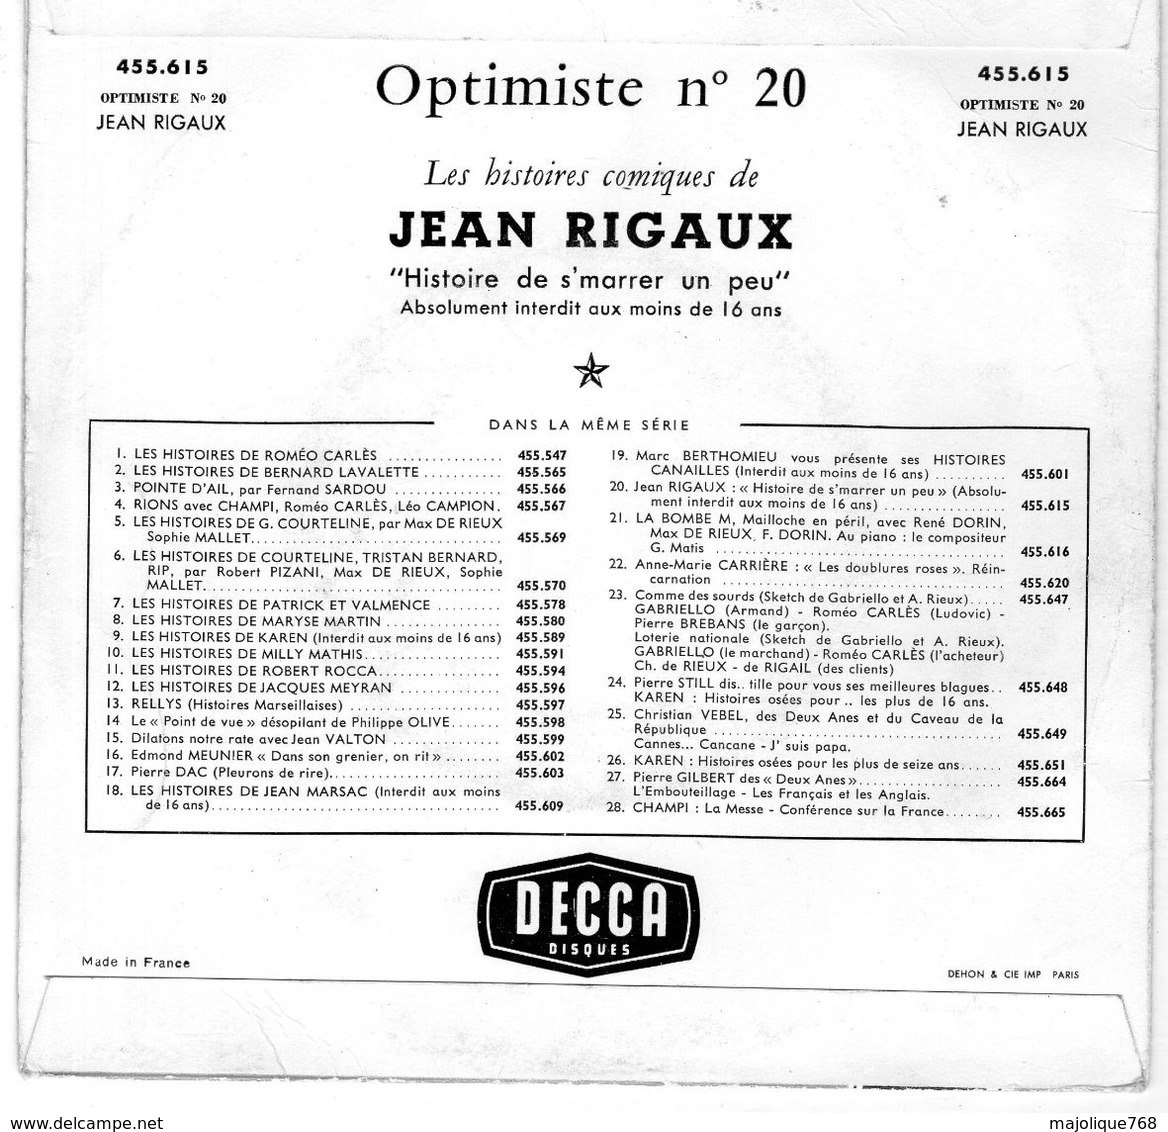 Disque - Jean Rigaux Optimiste N°20 - Histoire De S'marrer Un Peu - DECCA 455.615 - - Humour, Cabaret